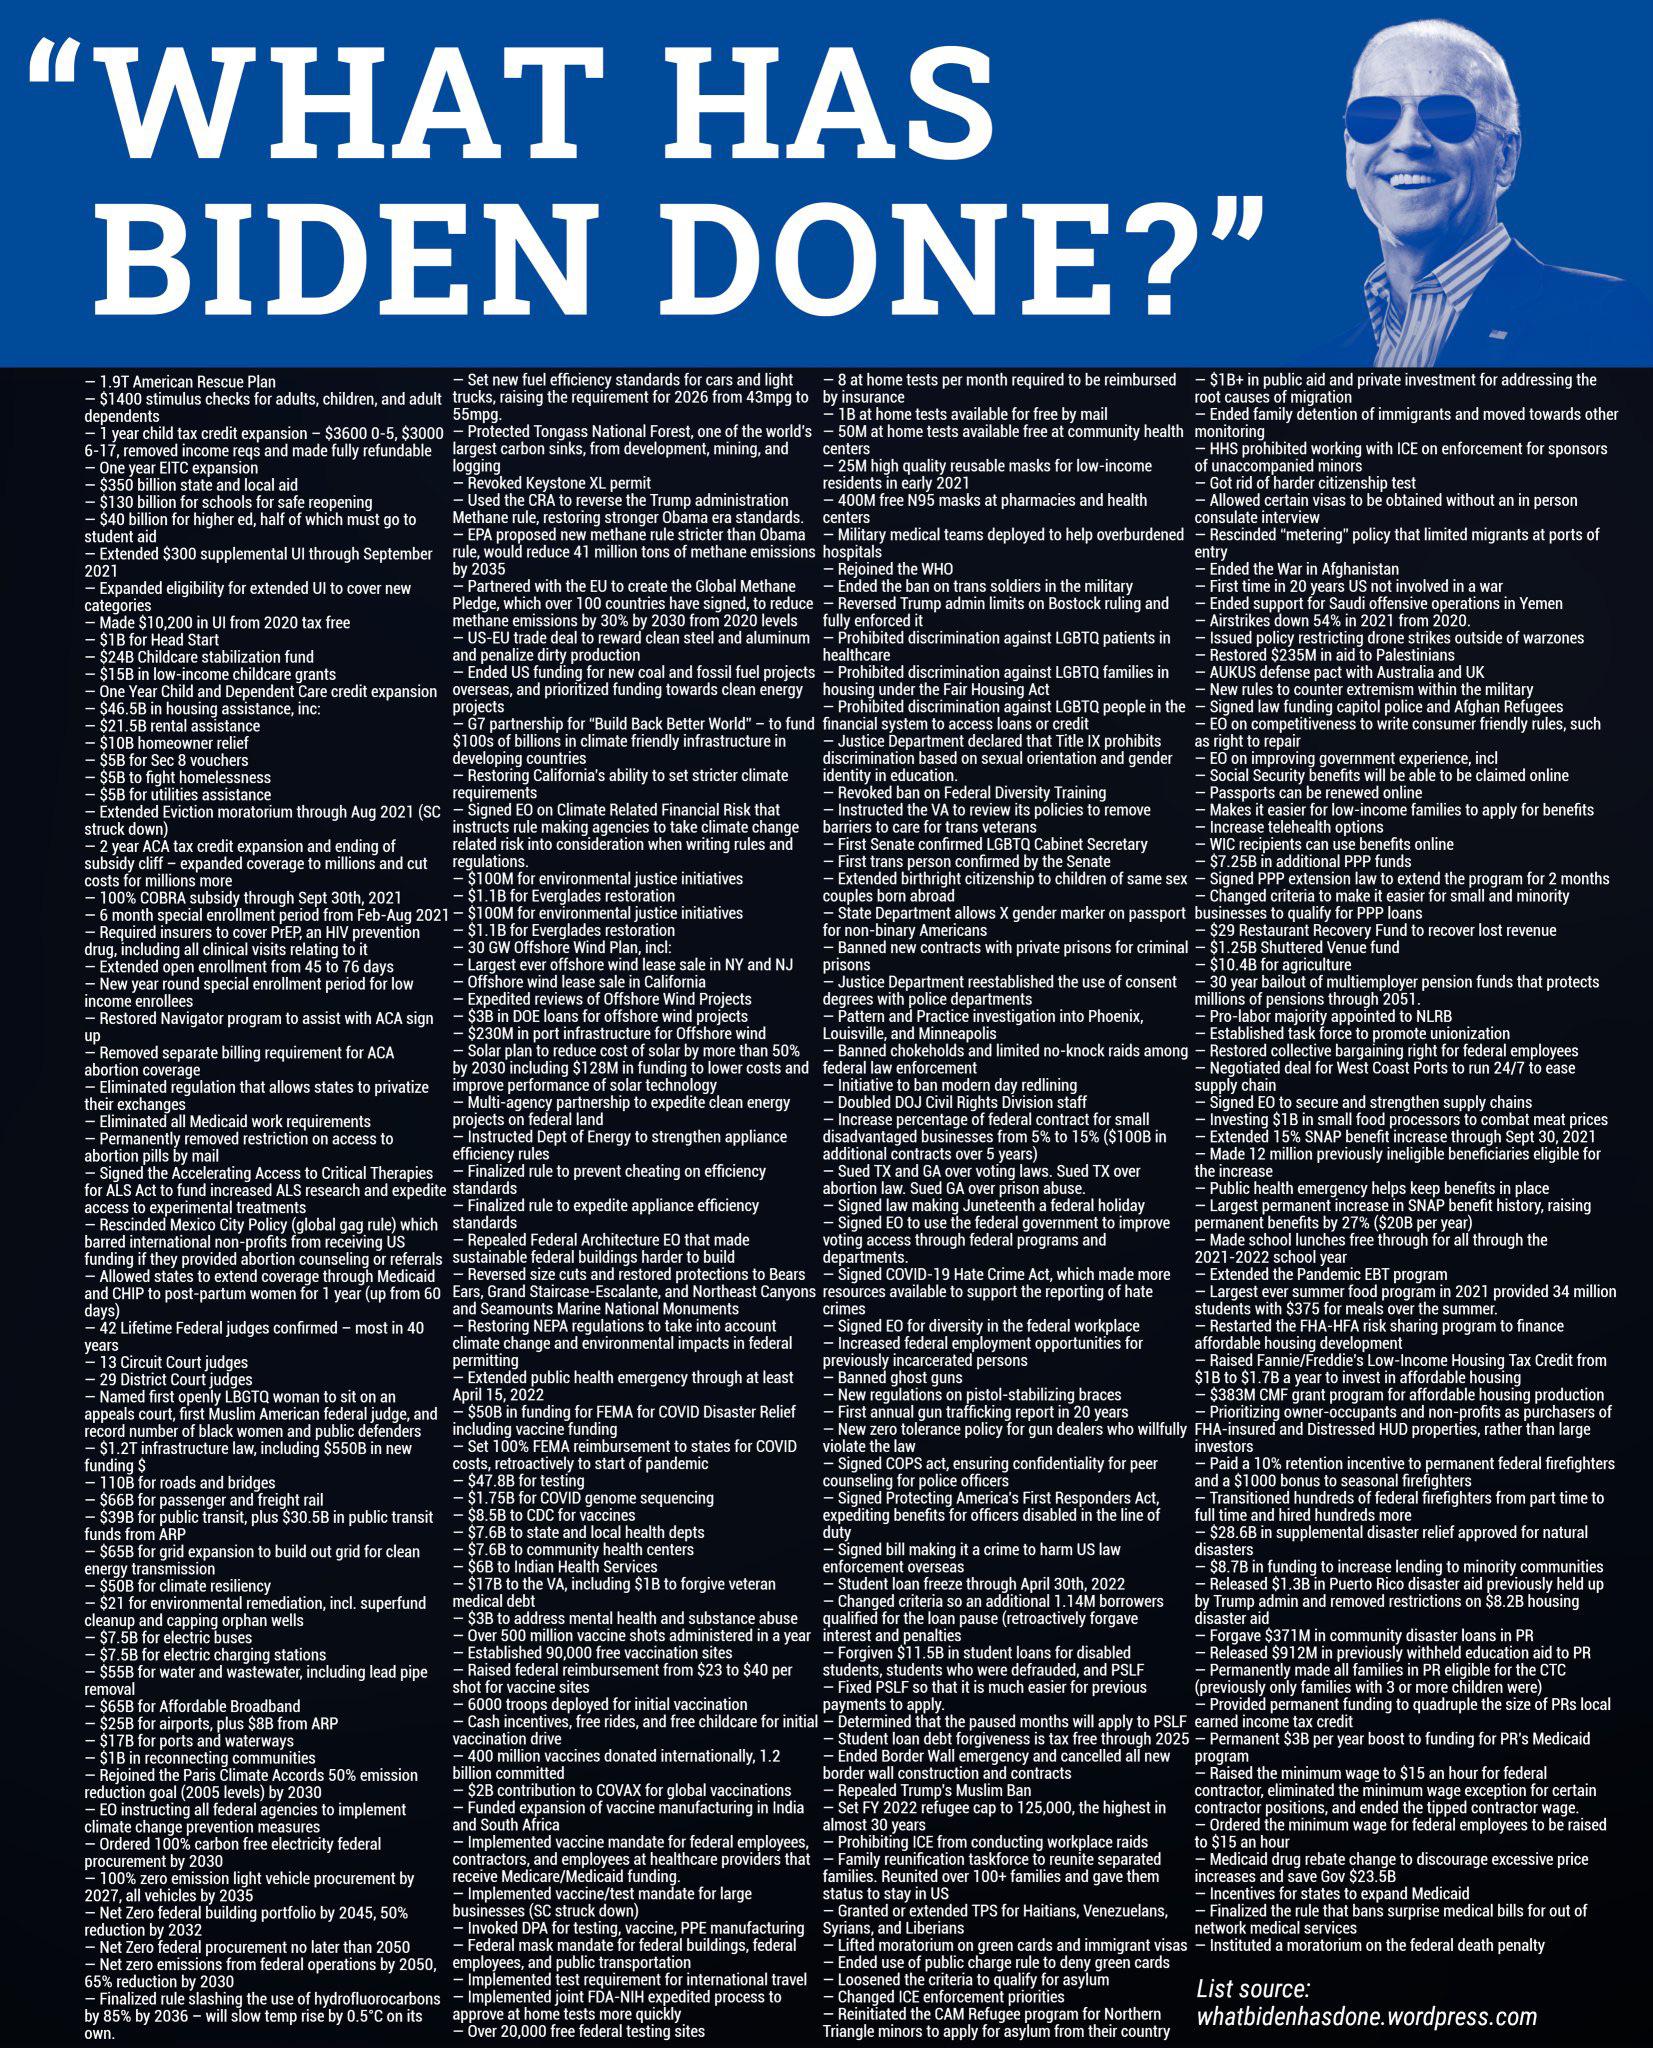 What has Biden done?